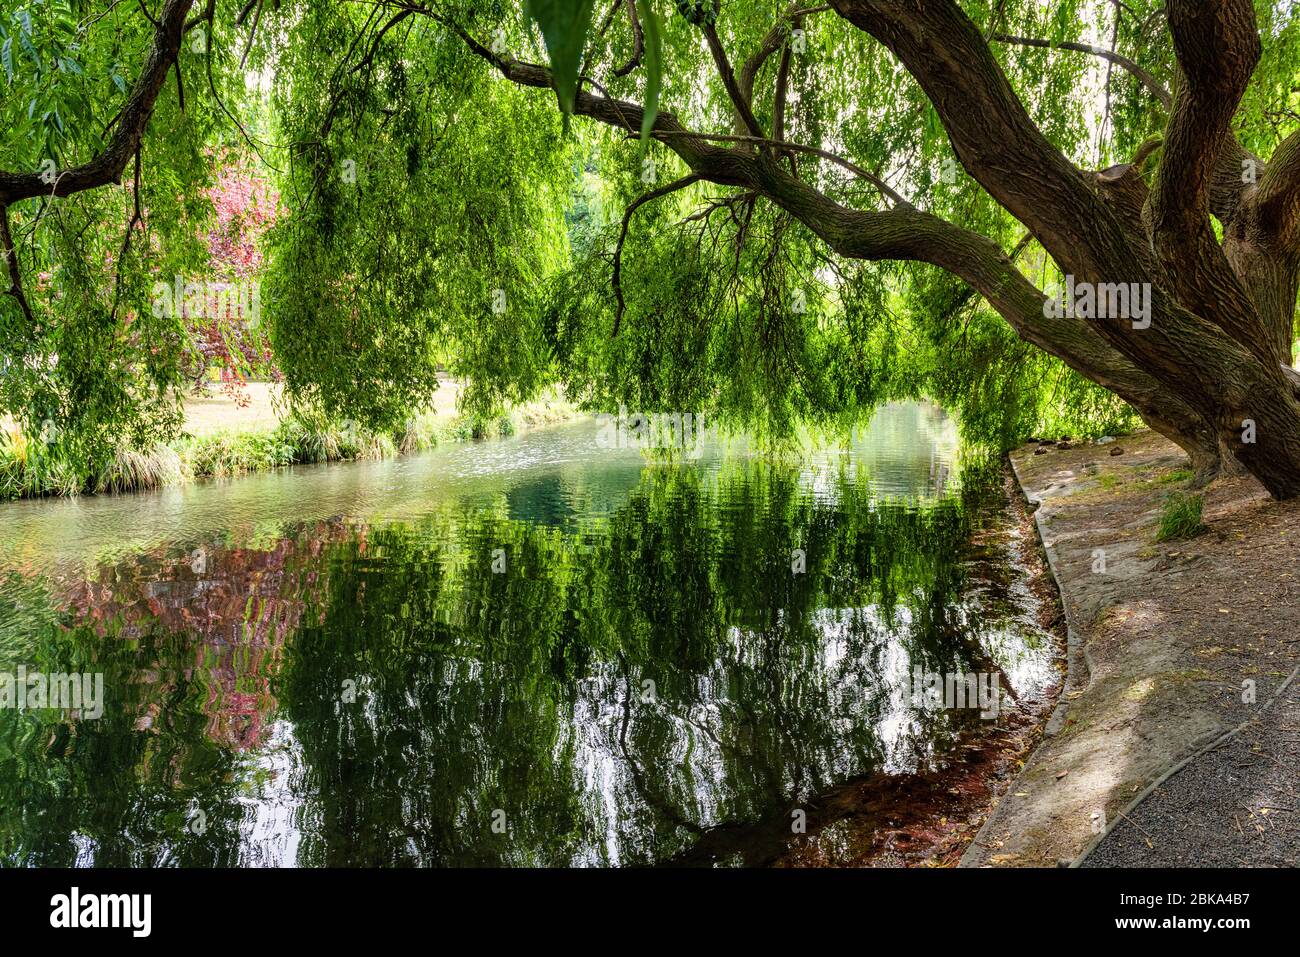 La rivière Avon traversant Hagley Park à Christchurch en Nouvelle-Zélande. Le saule sur la photo est le plus ancien du parc depuis plus de 100 ans Banque D'Images